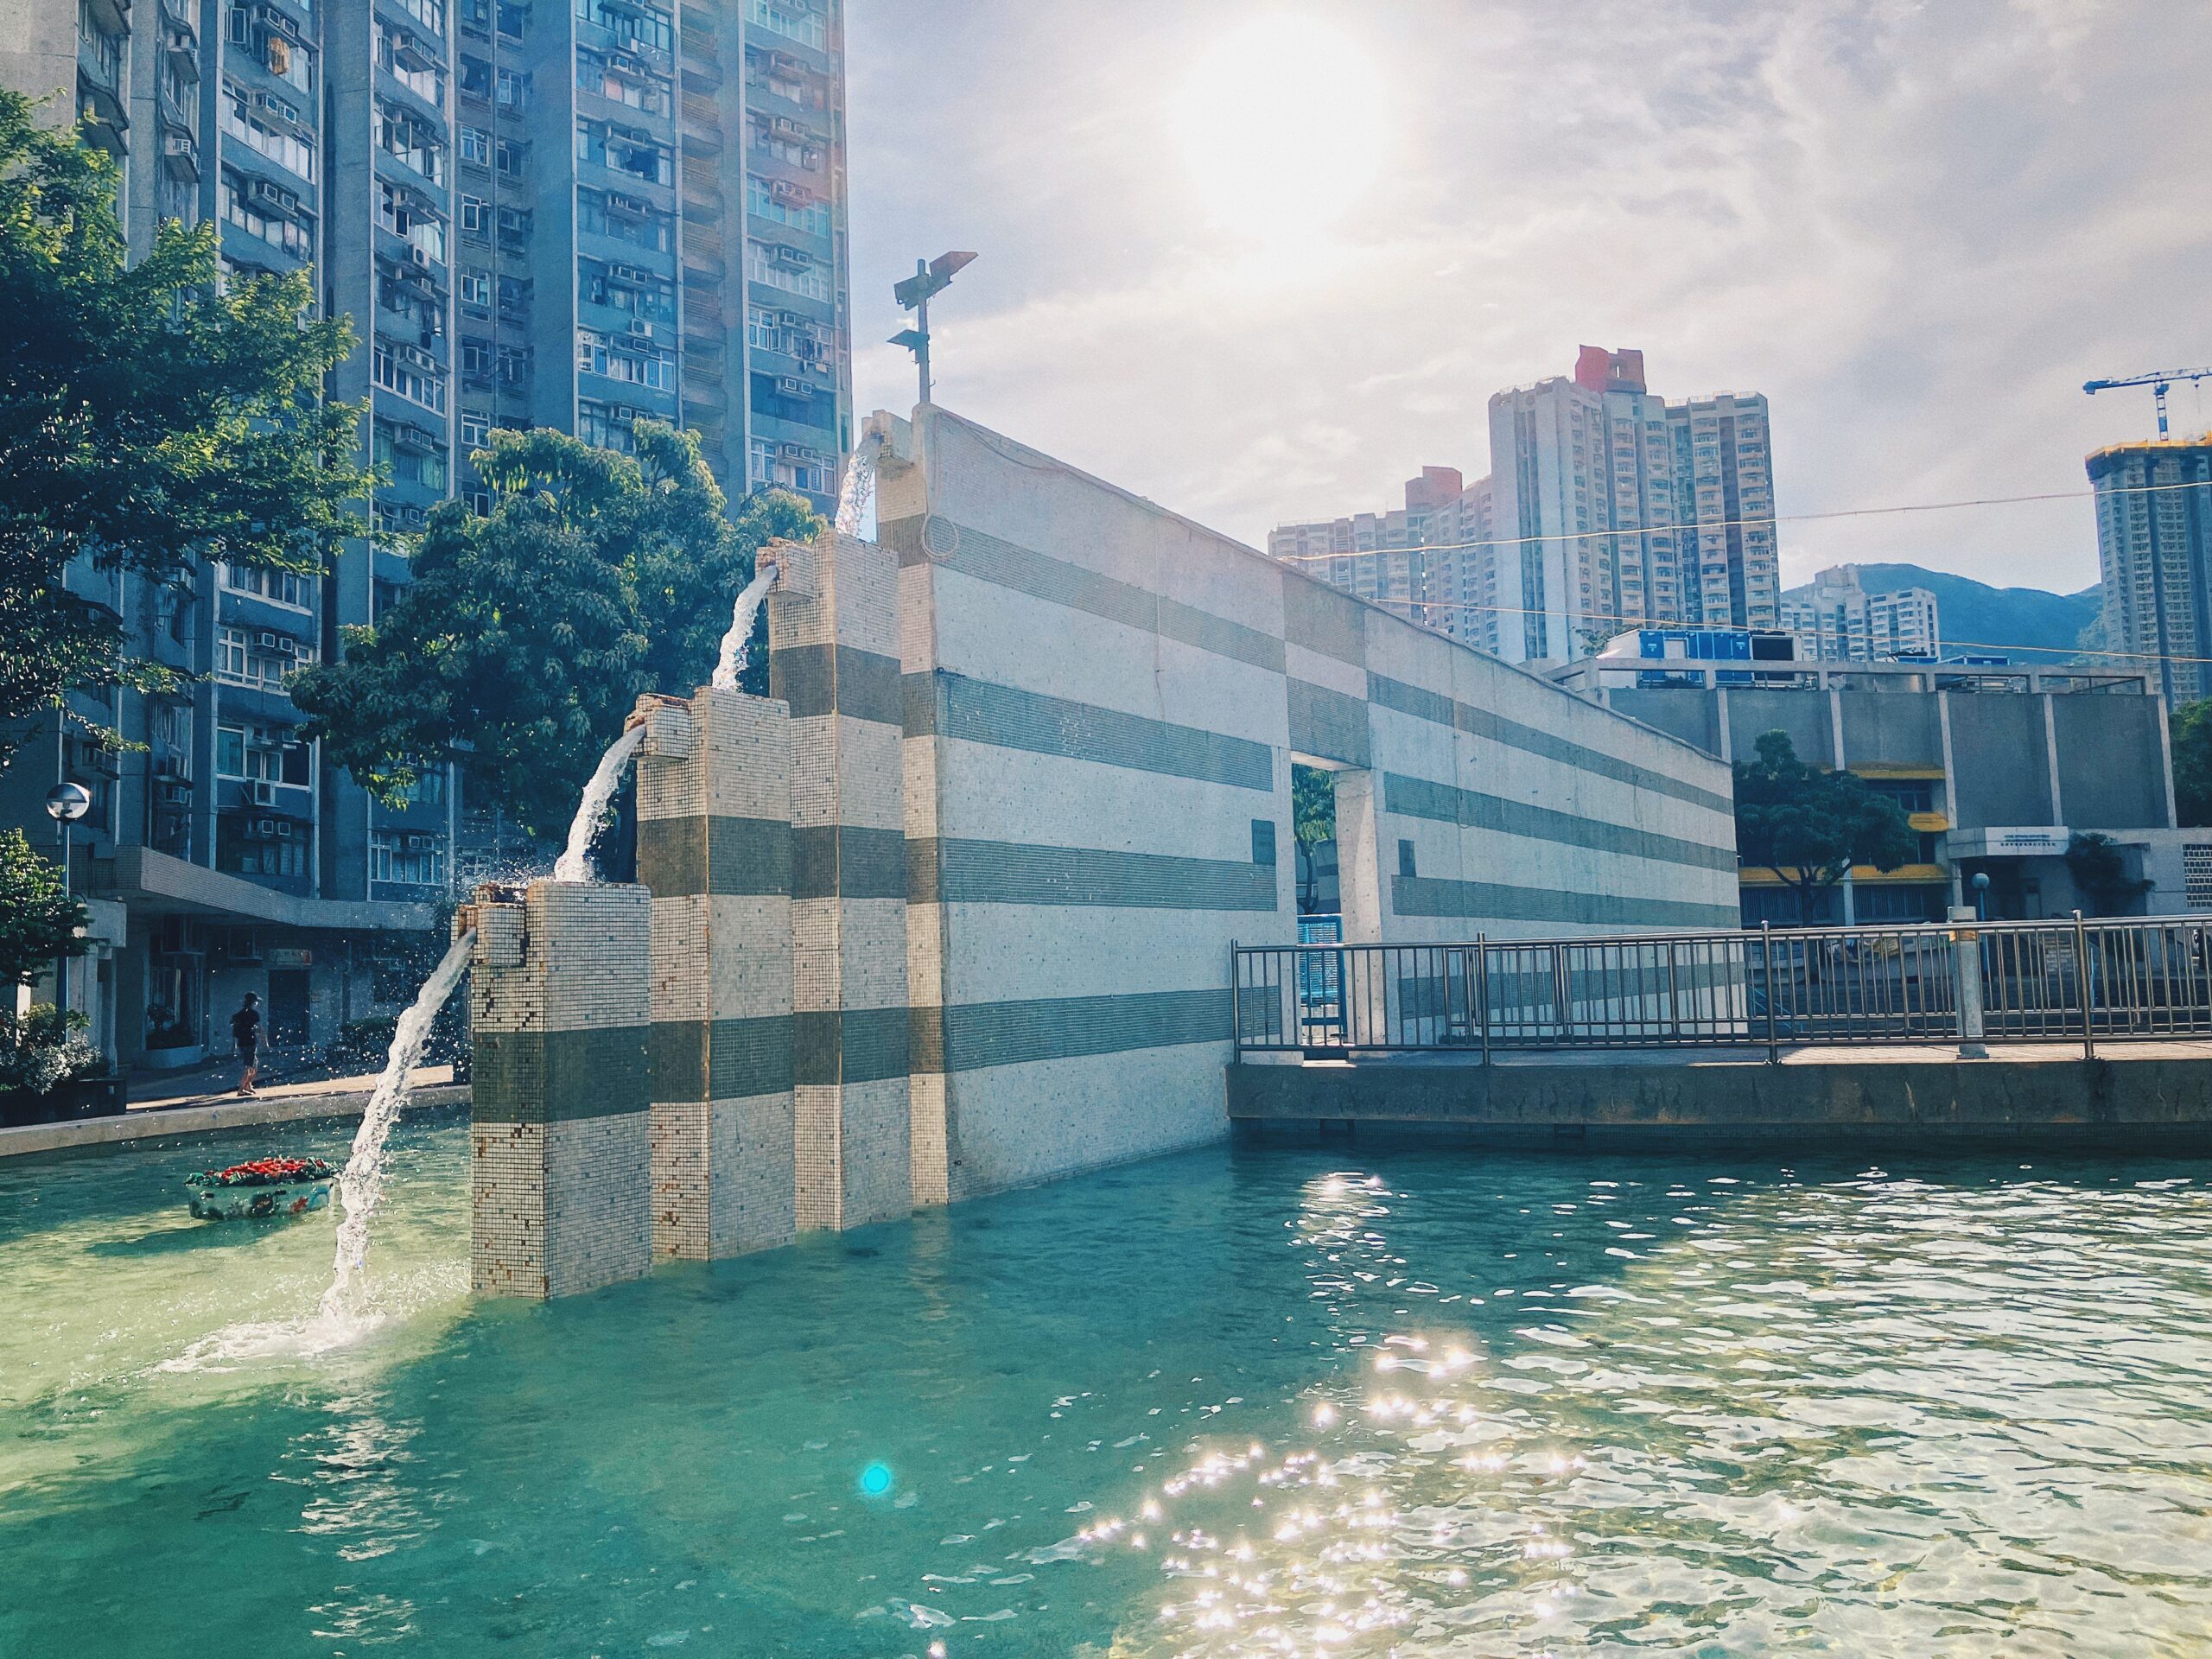 【香港公屋】屯門建生邨 公共空間運用設計藏驚喜